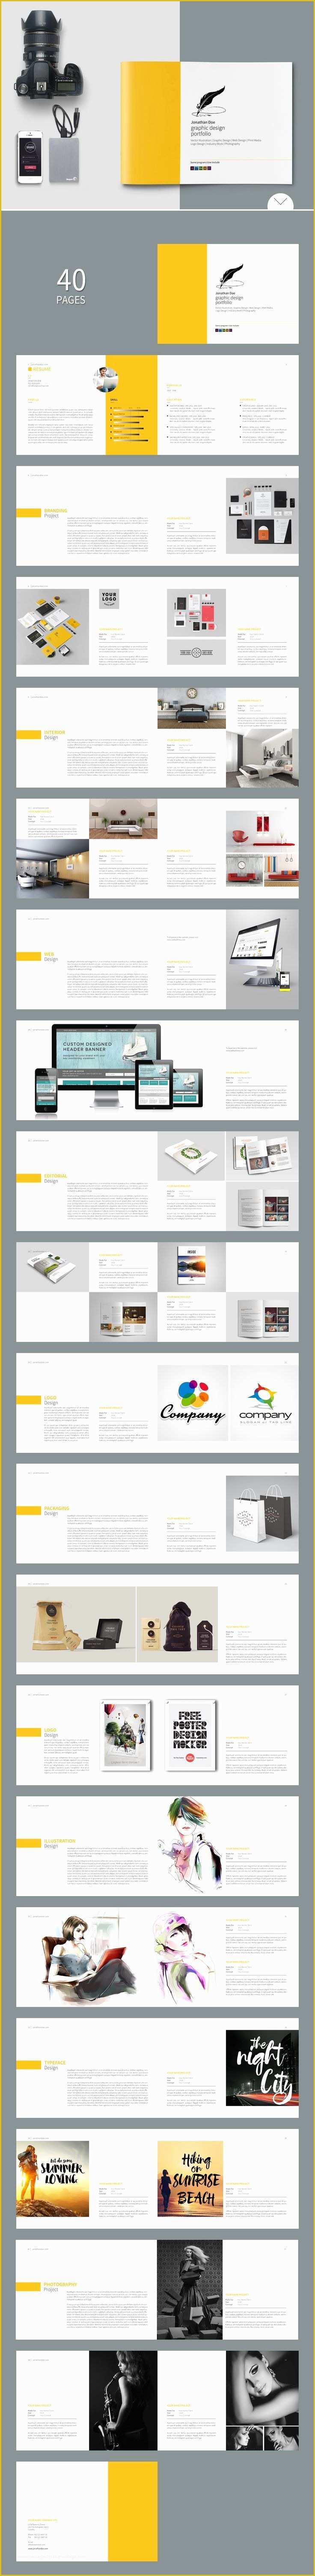 Interior Design Portfolio Templates Free Download Of Free Indesign Report Templates Graphic Design Print